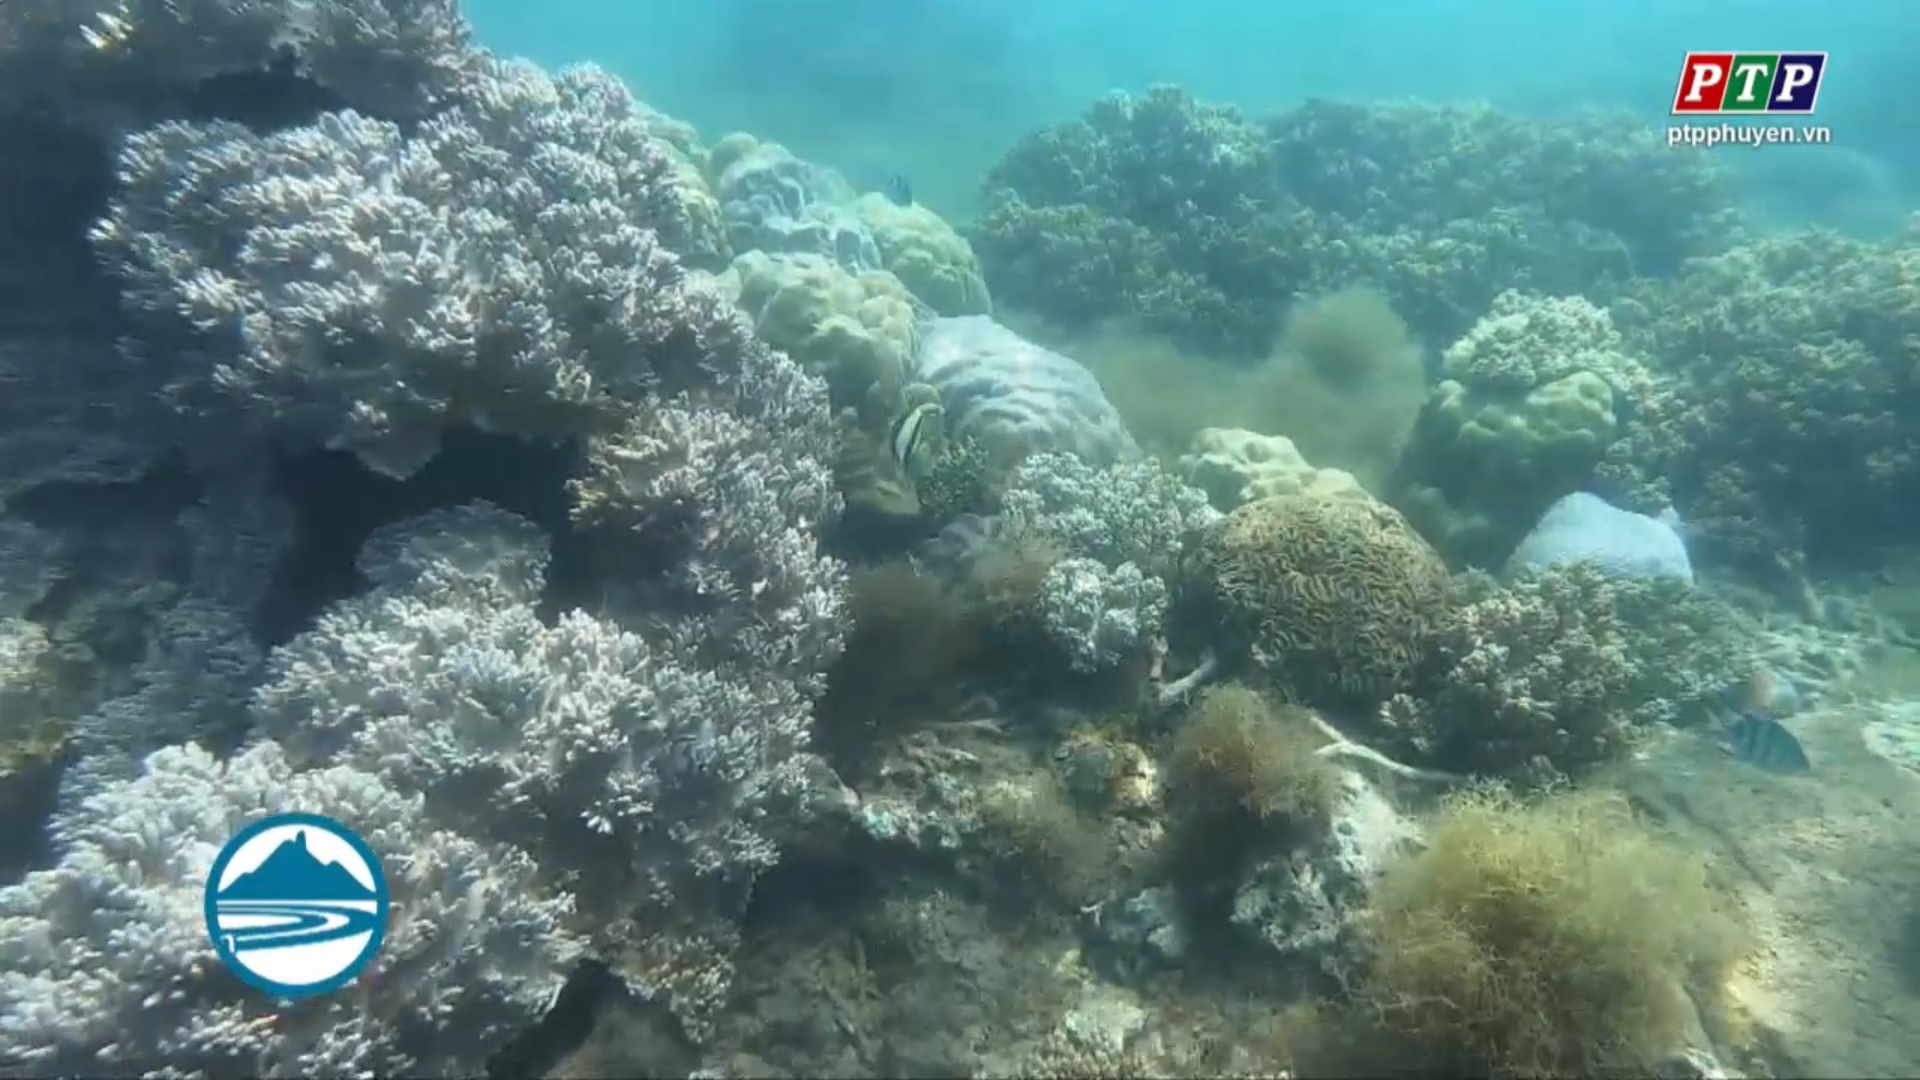 Bảo vệ, phát huy giá trị sinh thái san hô vùng biển ven bờ tỉnh Phú Yên